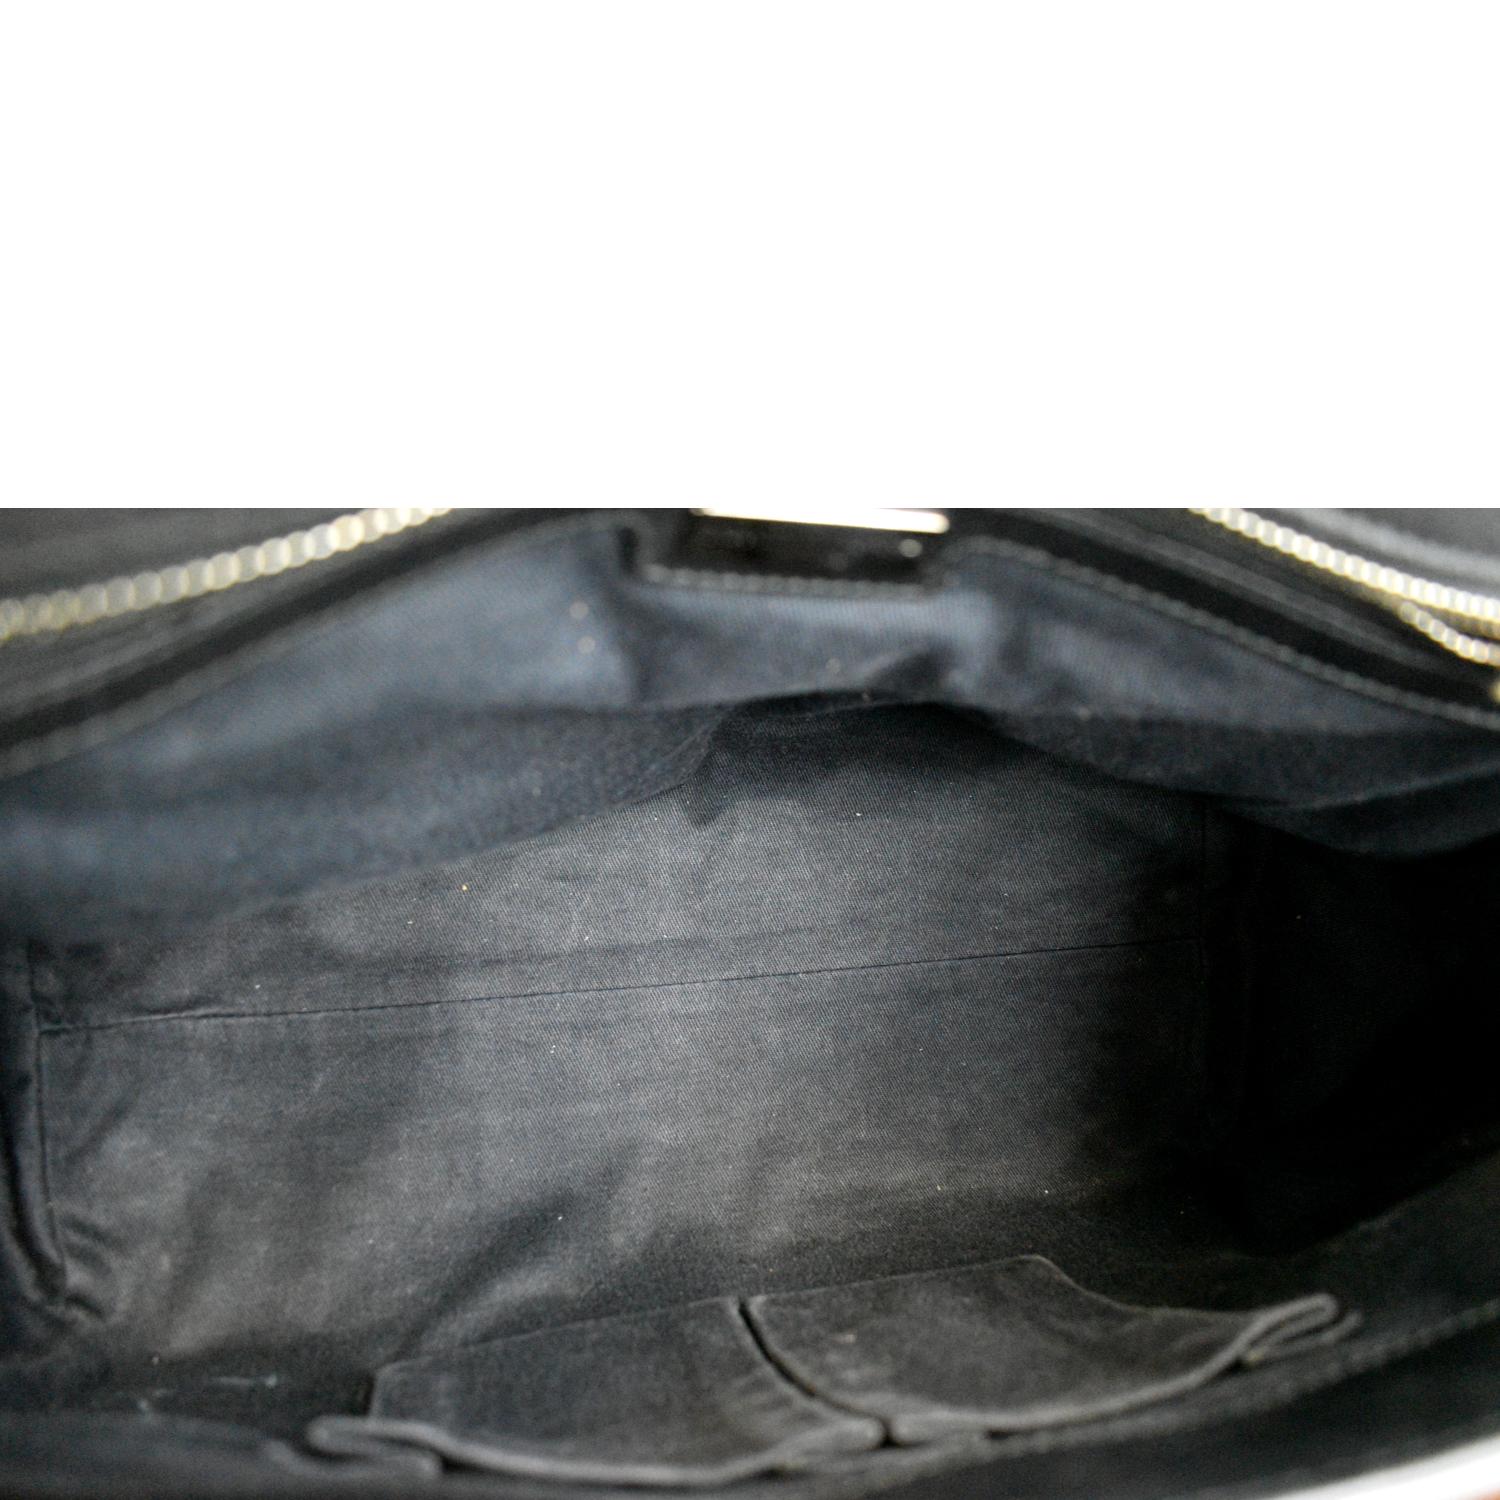 Sicily handbag Dolce & Gabbana Black in Wicker - 21334351